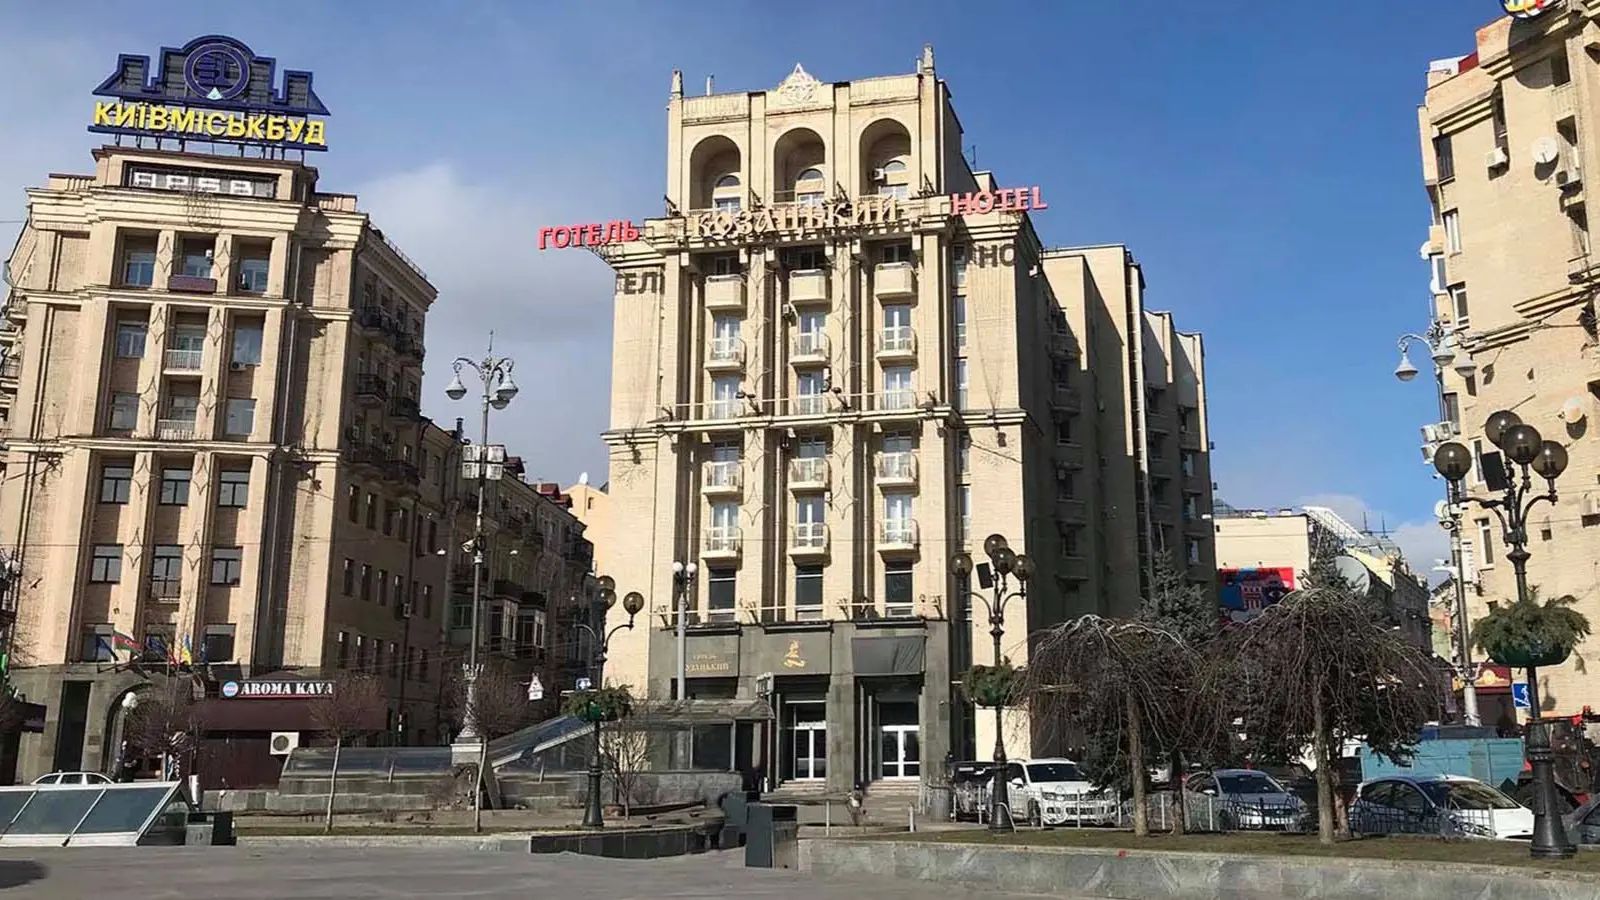 Готель «Козацький» на Майдані Незалежності продали за 400 мільйонів